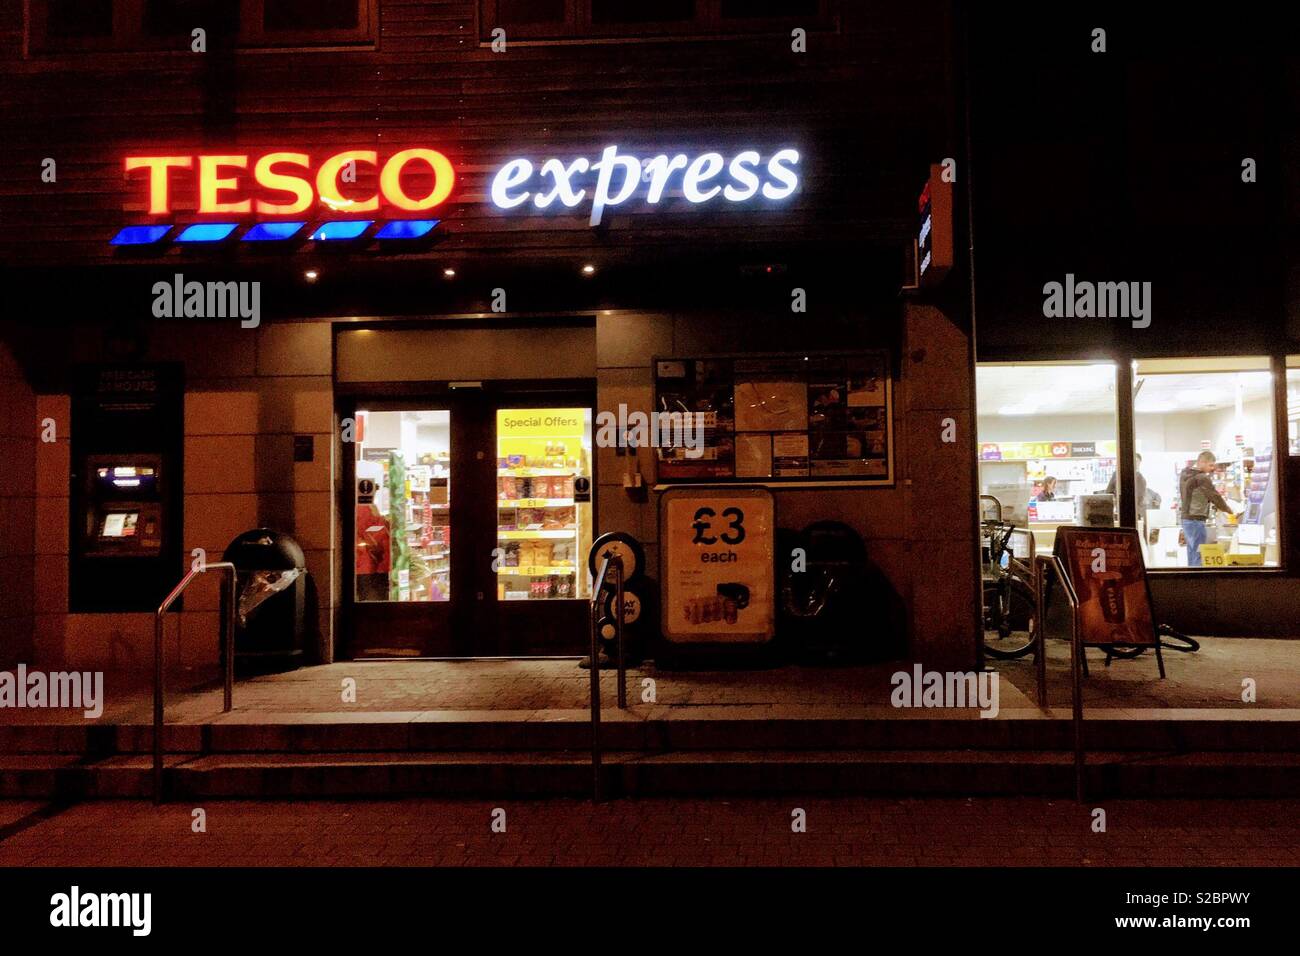 Le magasin Tesco express dans la région de Falmouth dans la nuit Banque D'Images